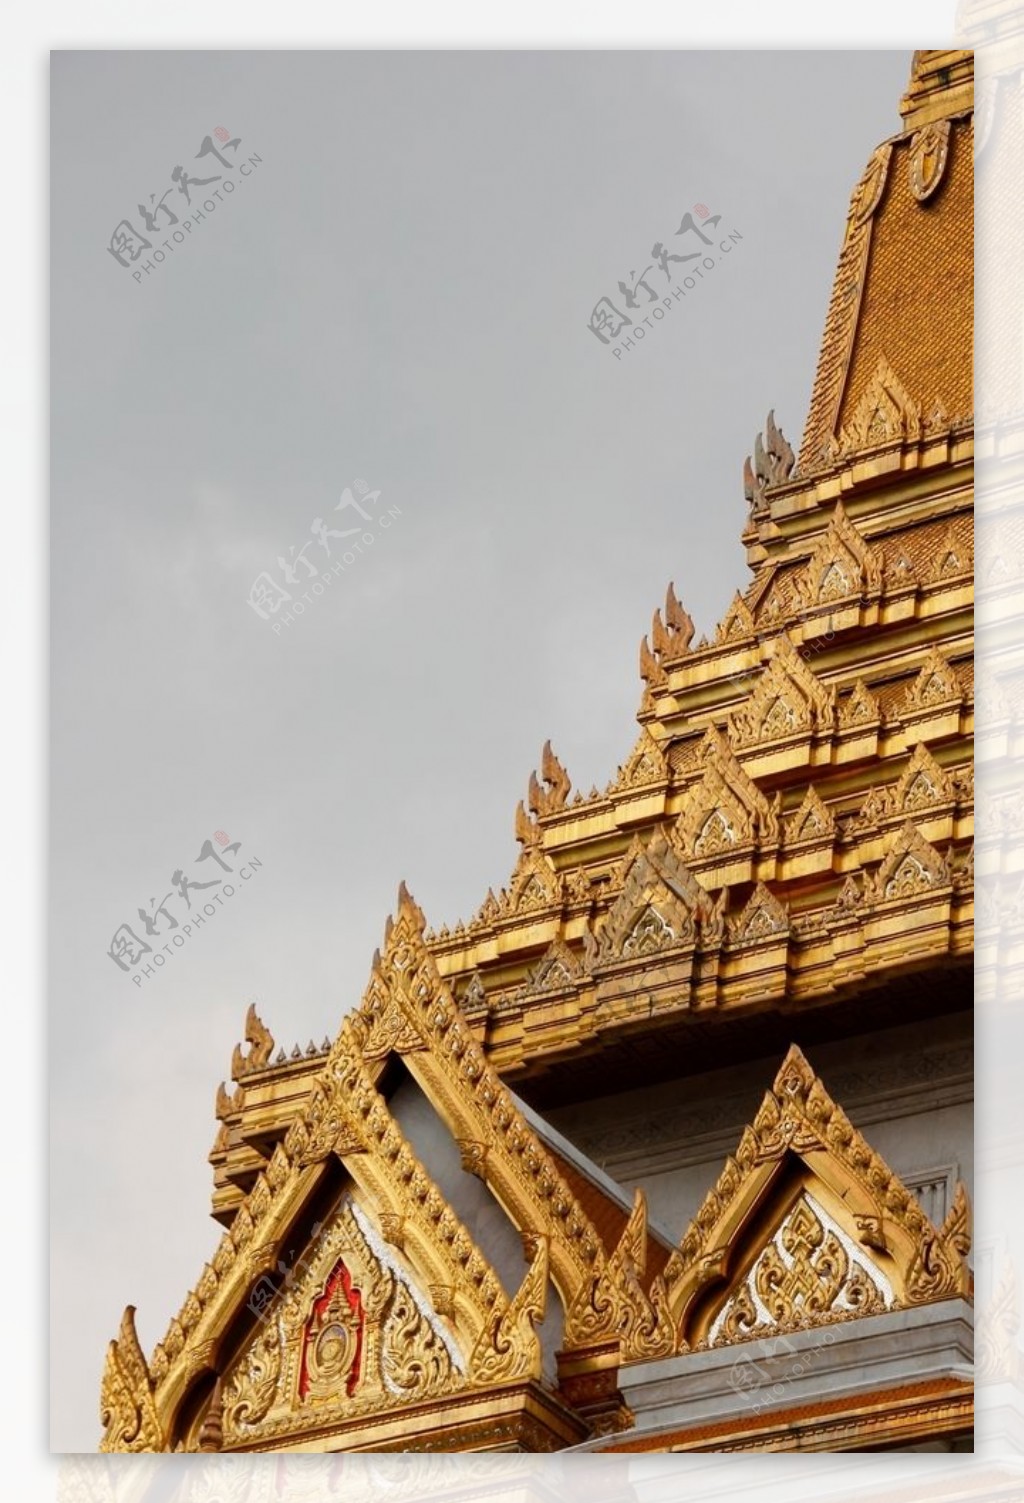 泰国曼谷建筑景观摄影